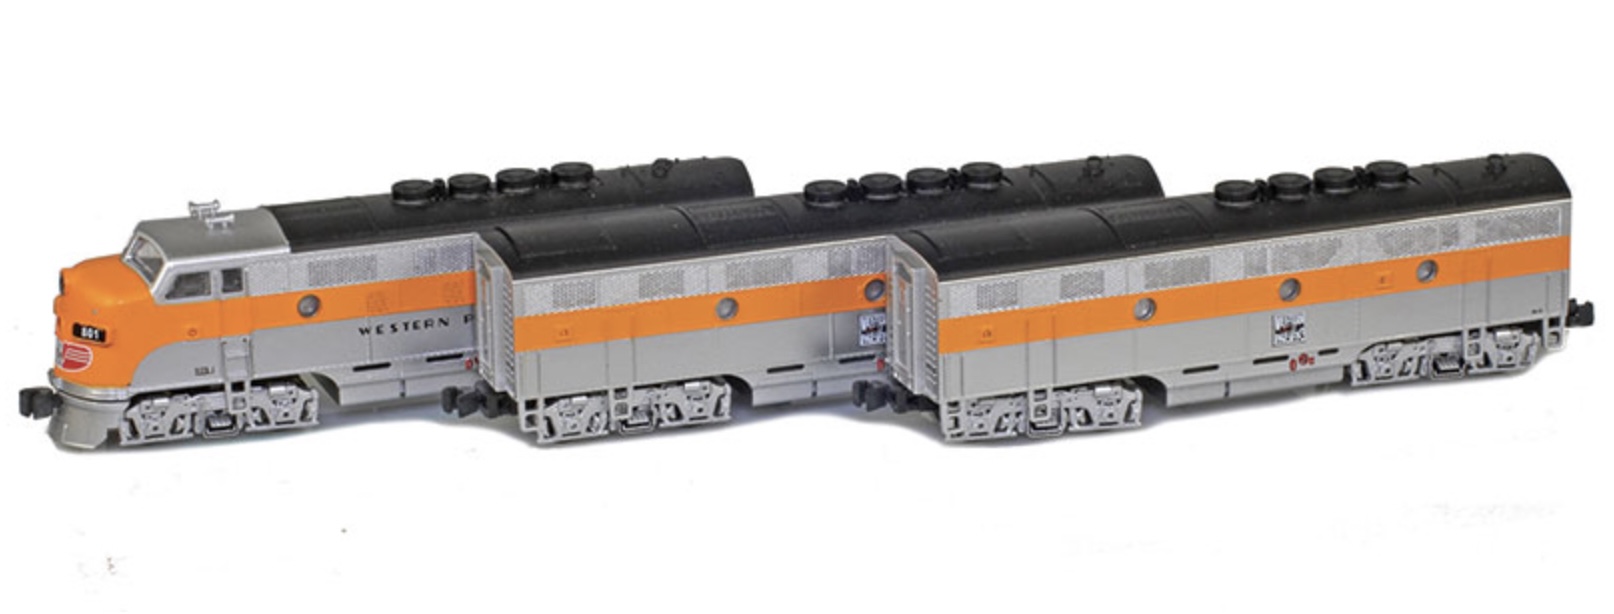 Z Scale - AZL - 62916-1 - Locomotive, Diesel, EMD F3 - Western Pacific - 801A, 801B, 802B